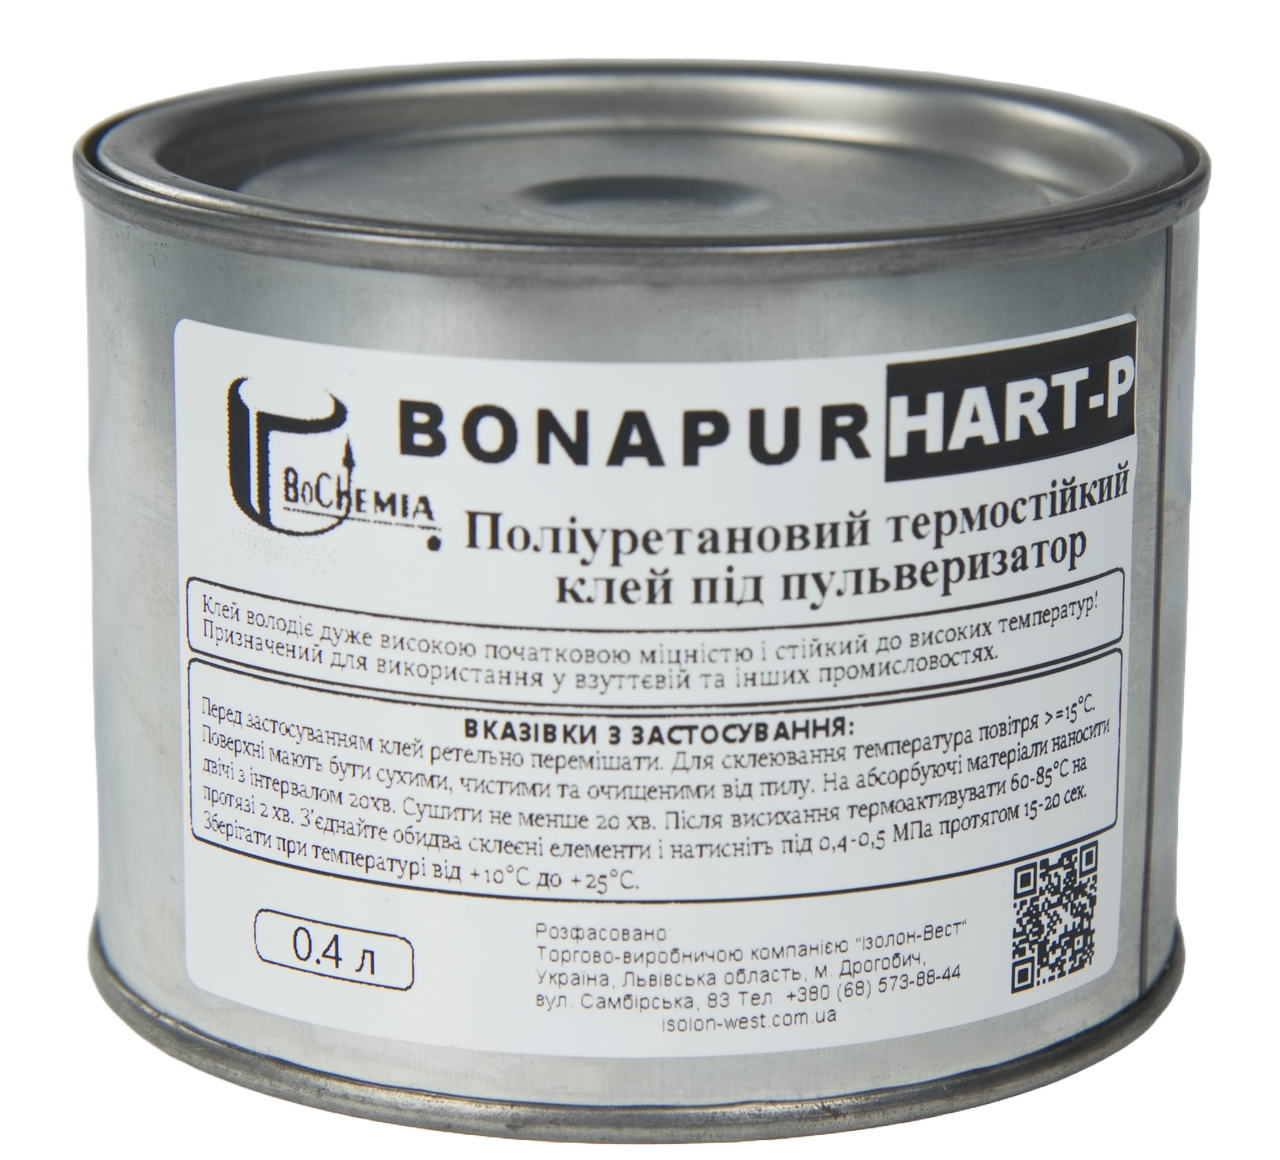 Поліуретановий термостійкий клей BONAPUR HART-P під пульверизатор для шкірозамінника, тканин, пвх, синтетичної шкіри детальна фотка